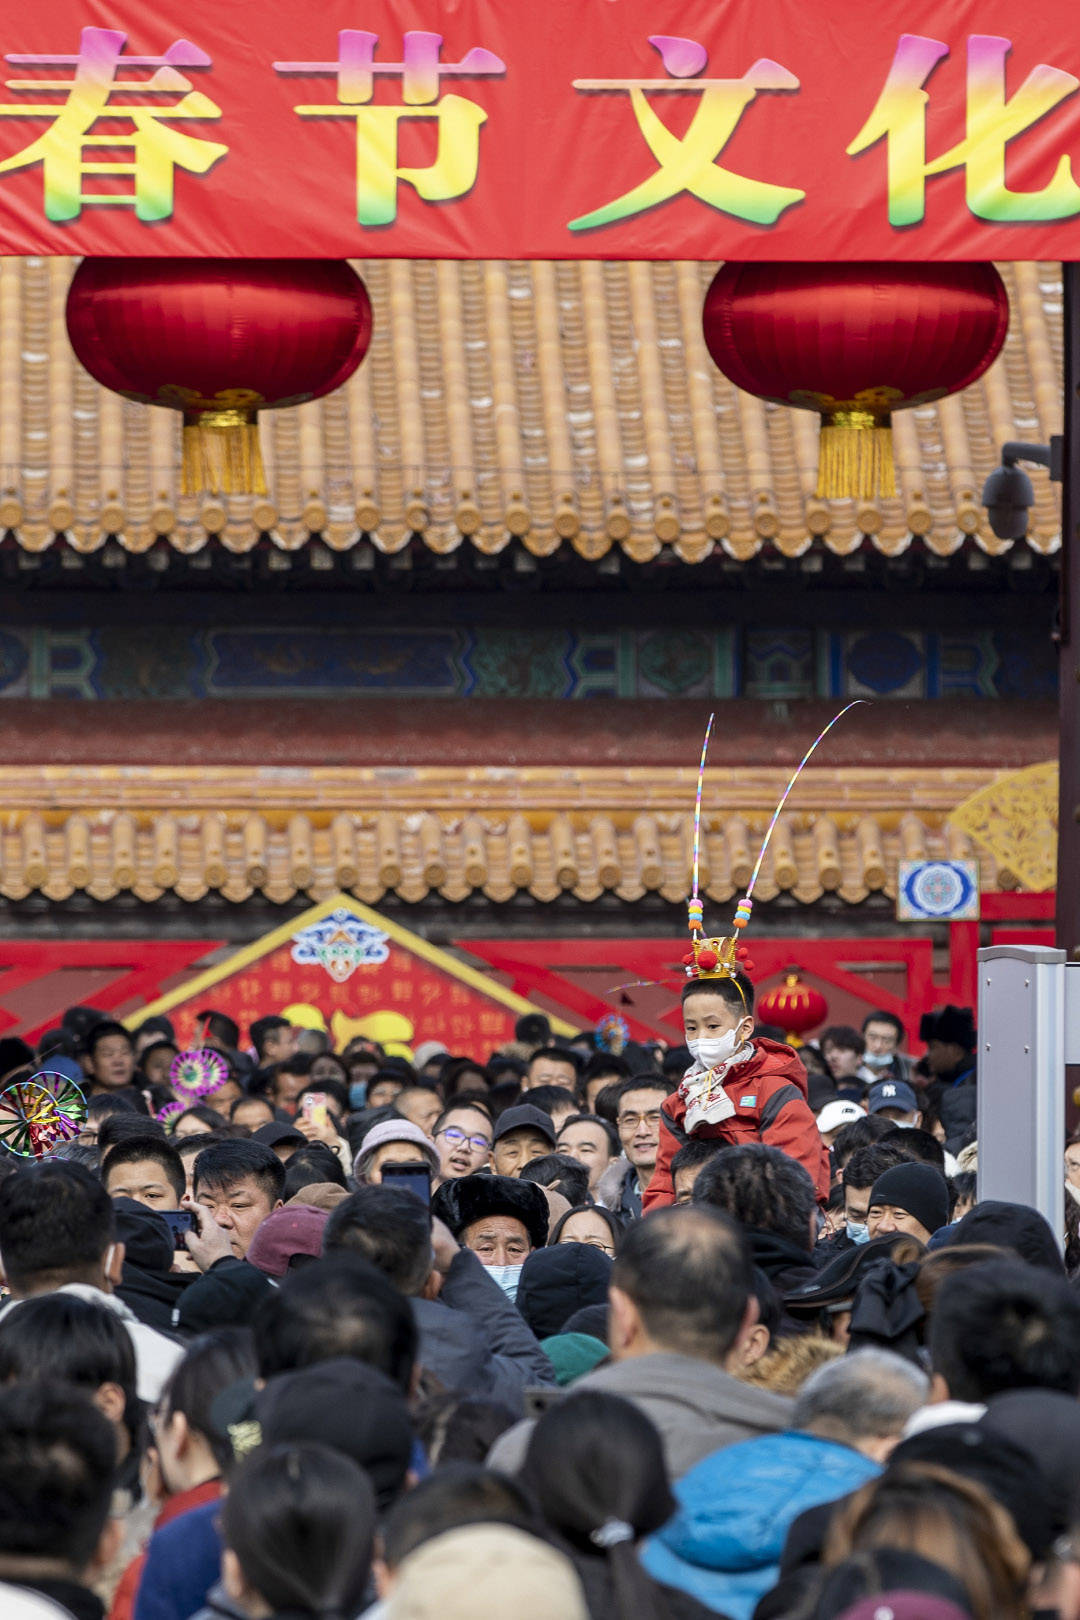 Trung Quốc những ngày du xuân: Hàng loạt lễ hội được tổ chức, biển người chật cứng đến check in gây choáng - Ảnh 9.